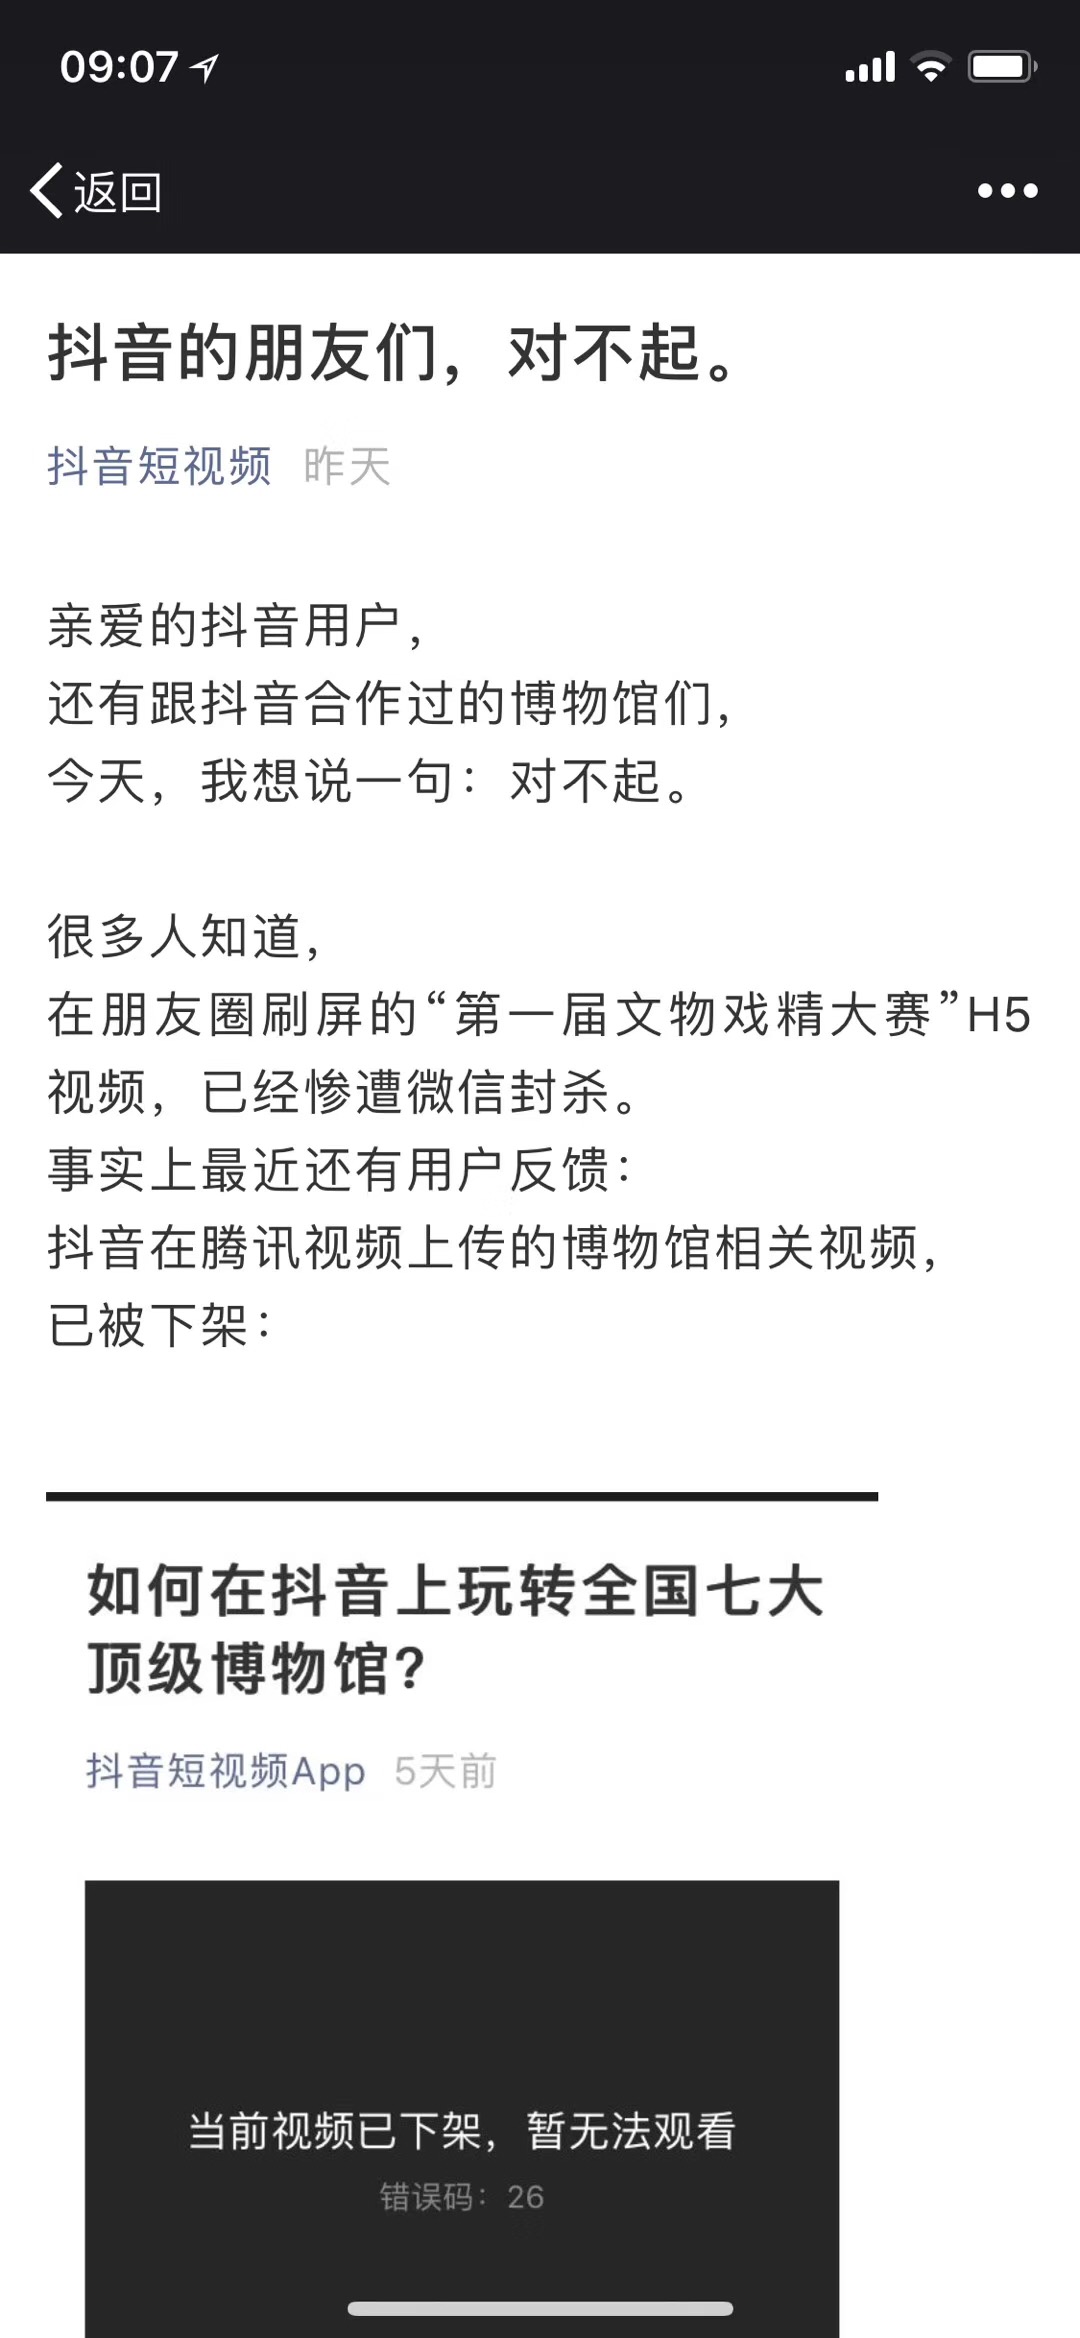 抖音总裁张楠控诉微信封杀一事:搞垄断搞小动